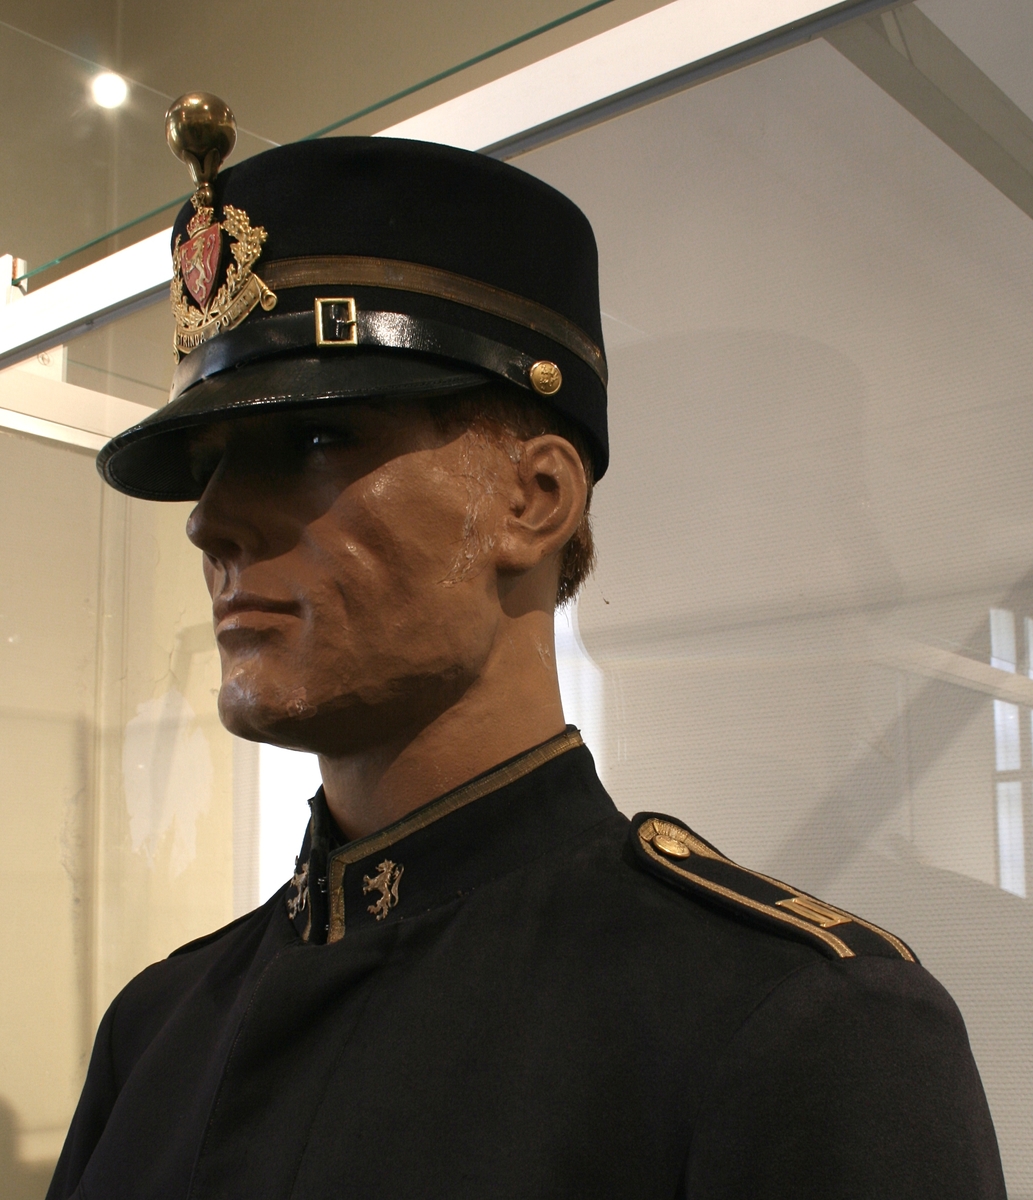 Politiuniform, jakke og bukse. Modell 1907.
Strinda politi, uniformen er i henhold til uniformsmalen av 1914. Stasjonsbetjent.
Buksa har rød passepoil.